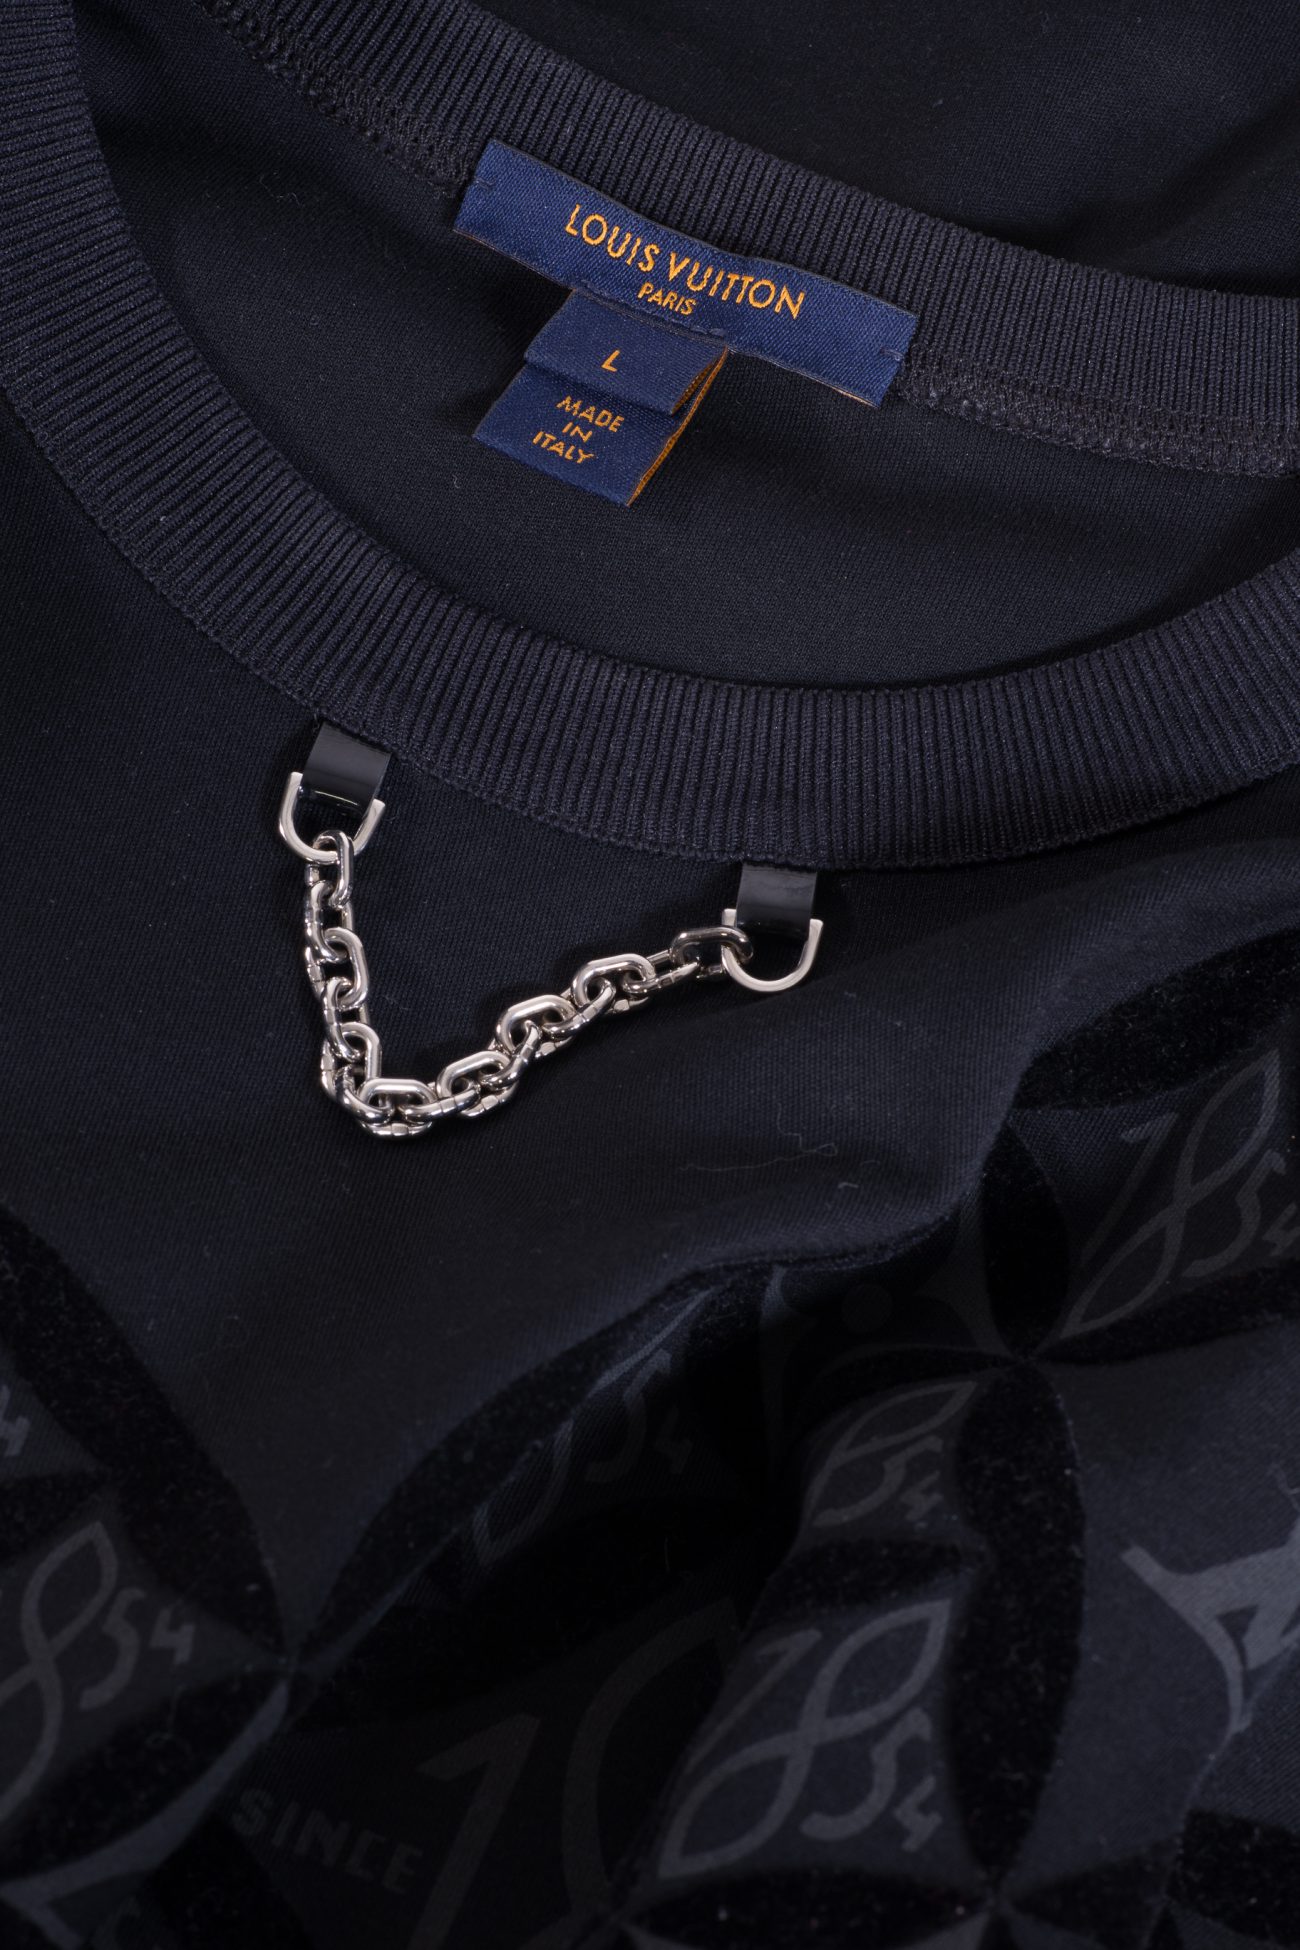 Louis Vuitton Chain-link accent crew neck T-shirt